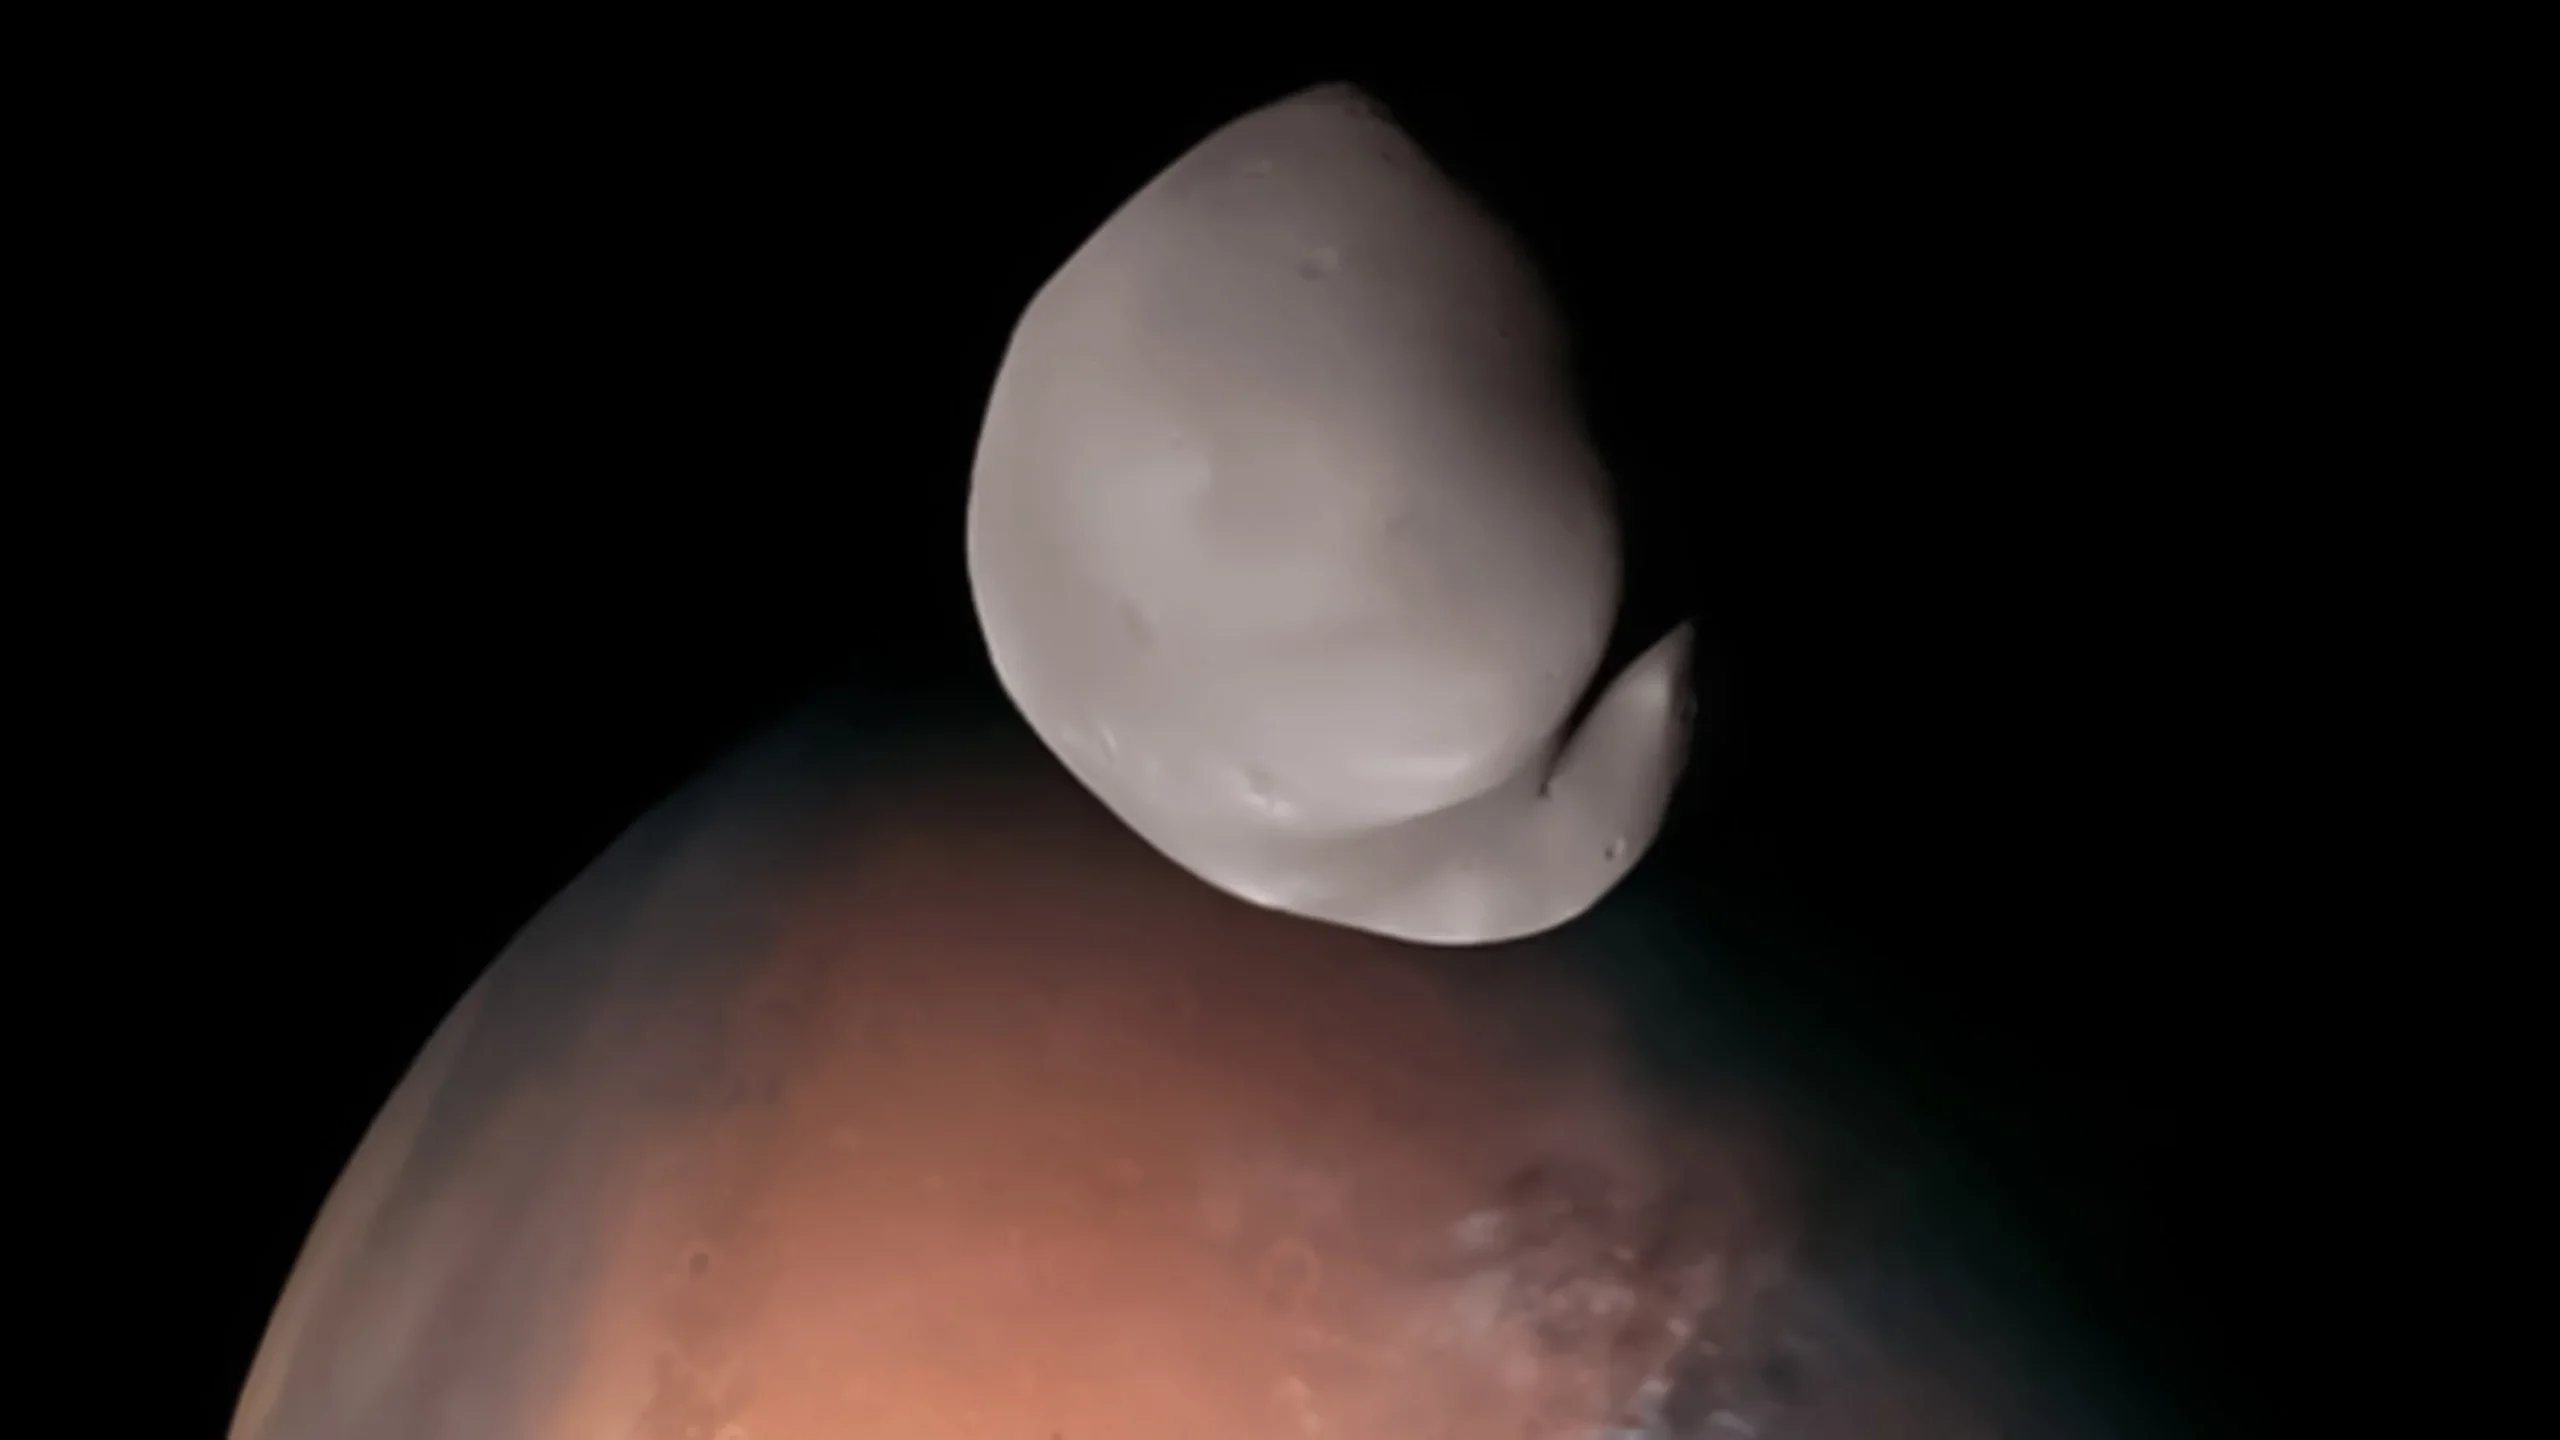 Capturan imágenes únicas del lado oculto de una luna de Marte